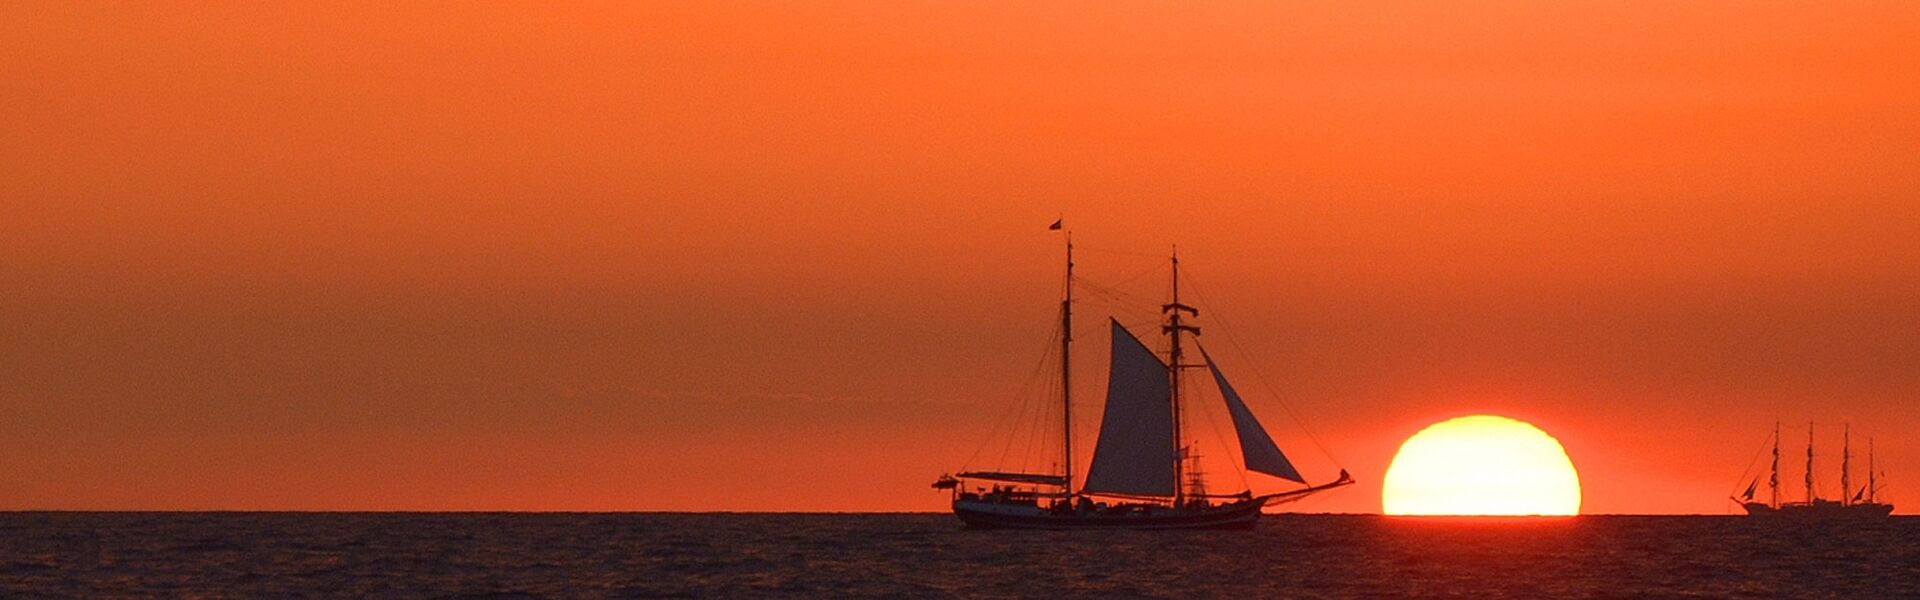 Sonnenuntergang zur Hanse Sail mit Segelschiff Banjaard